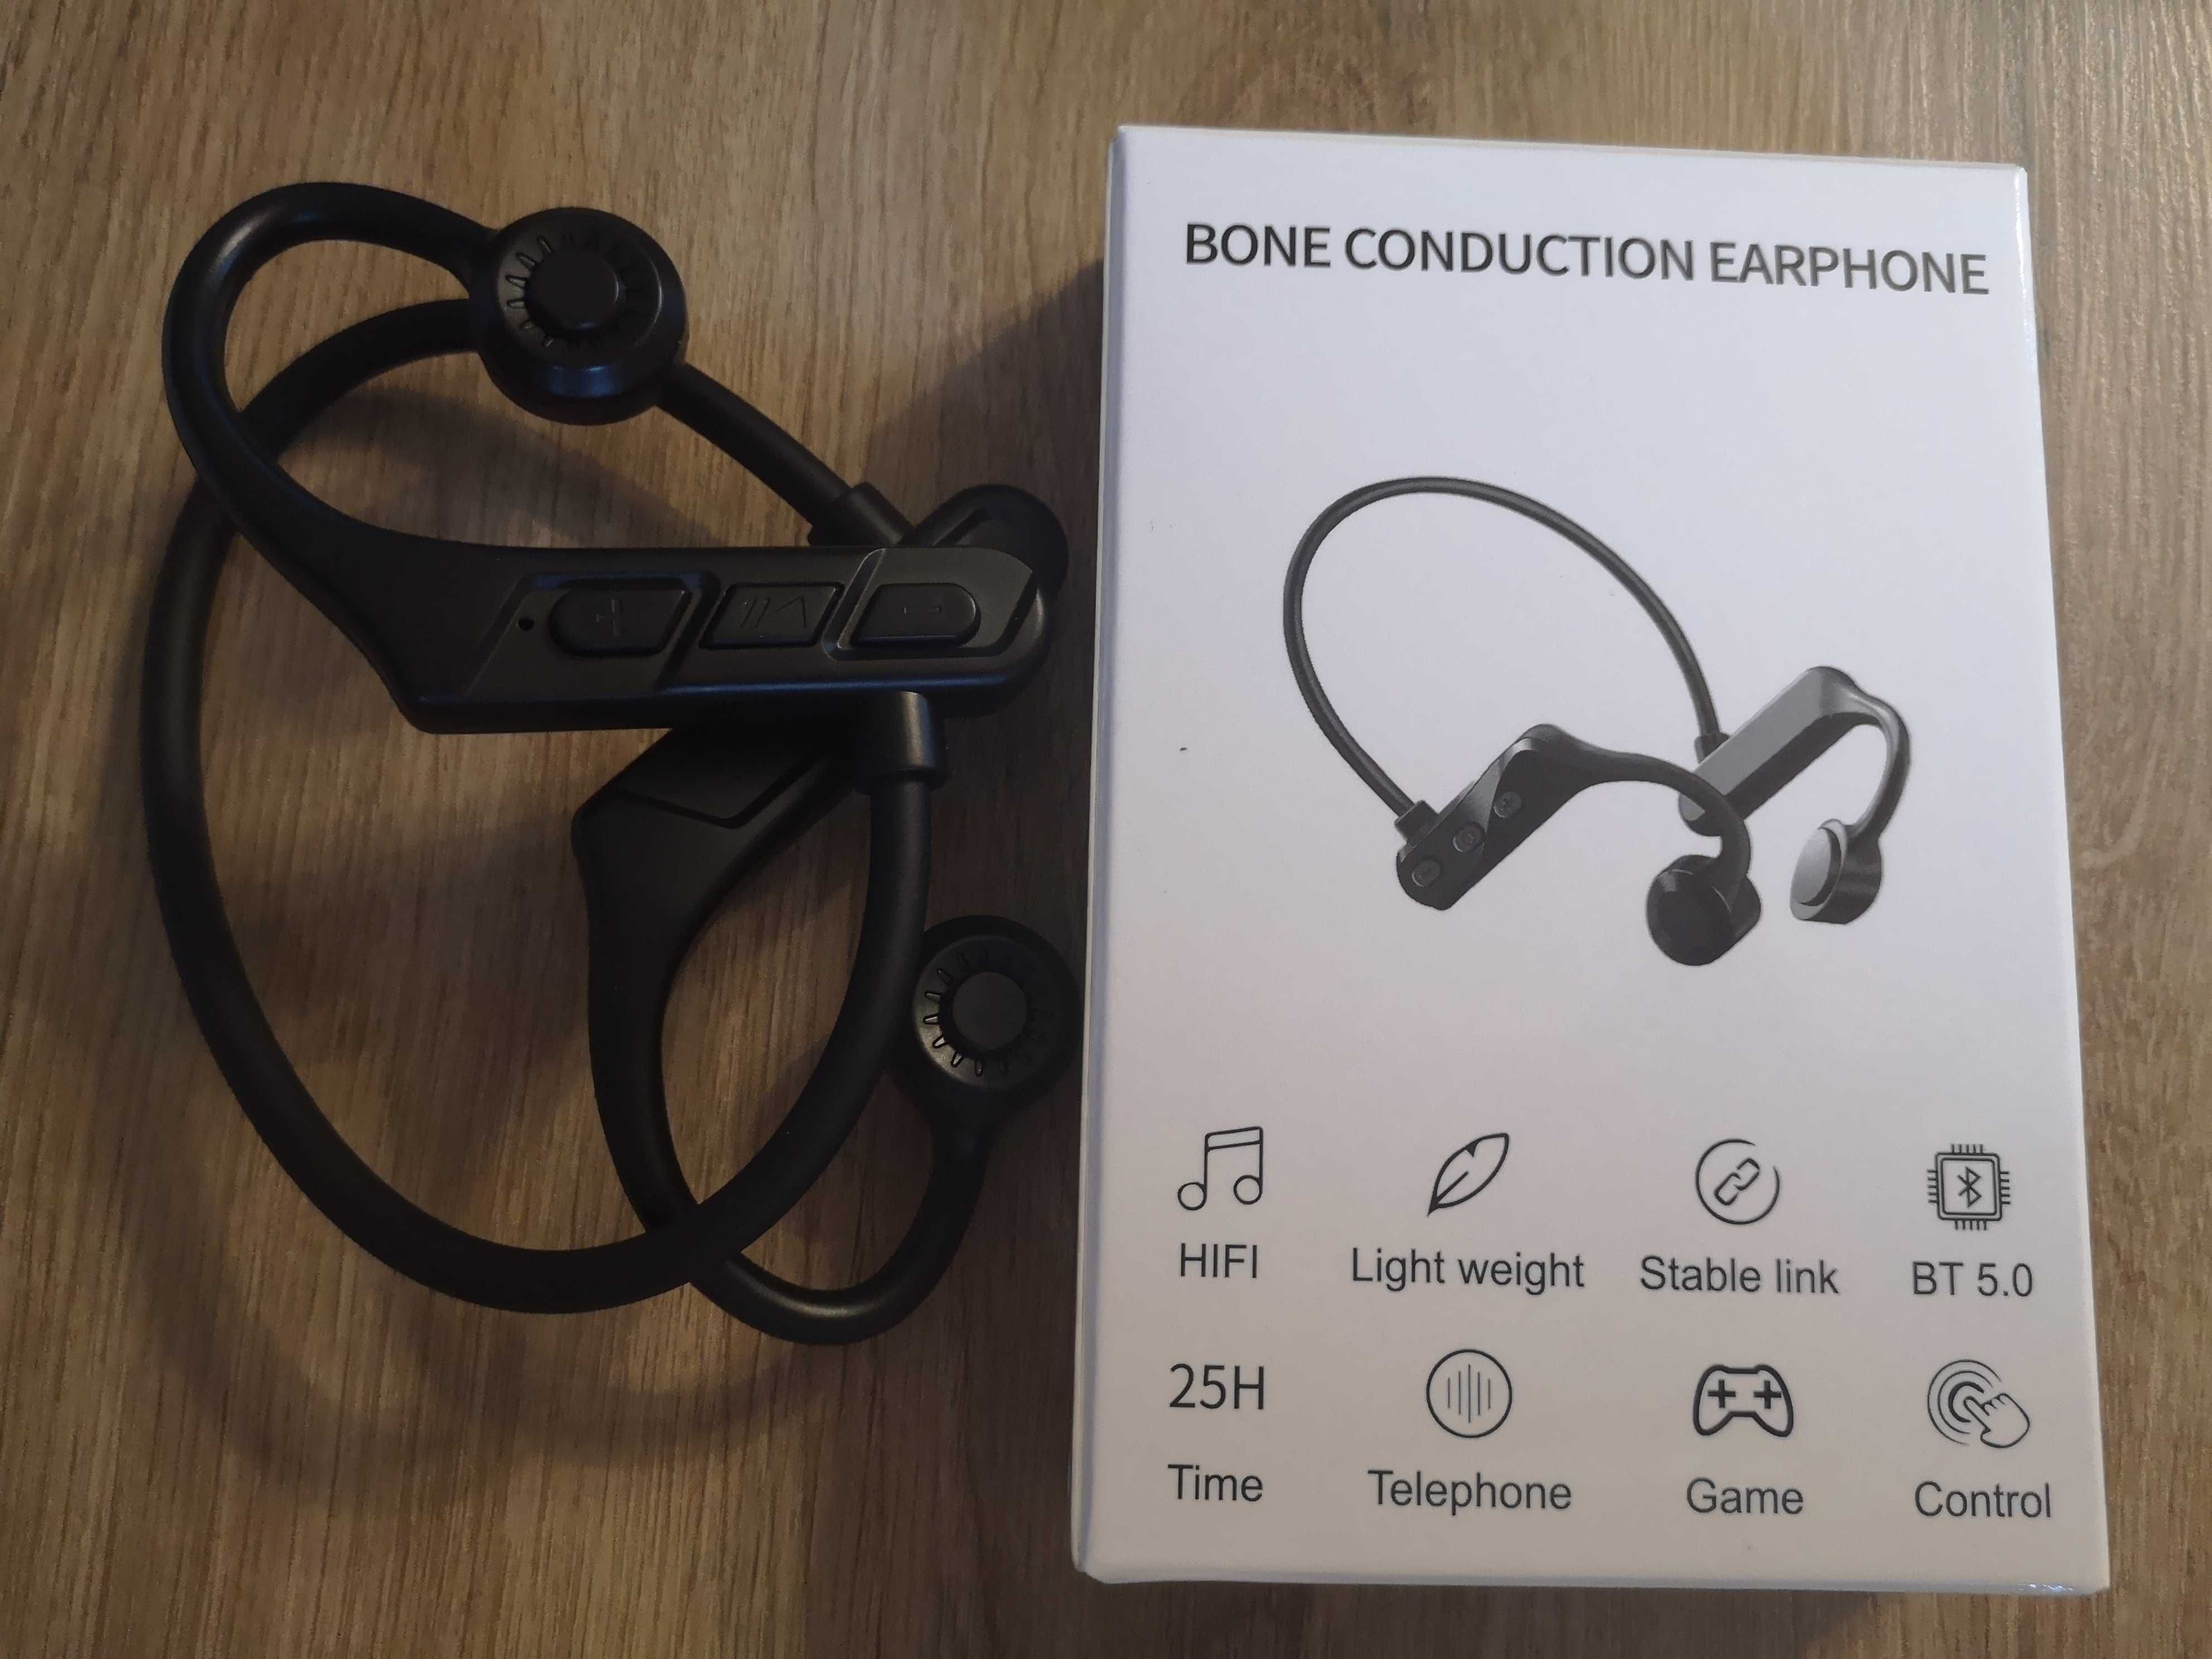 Bezprzewodowe słuchawki Bluetooth